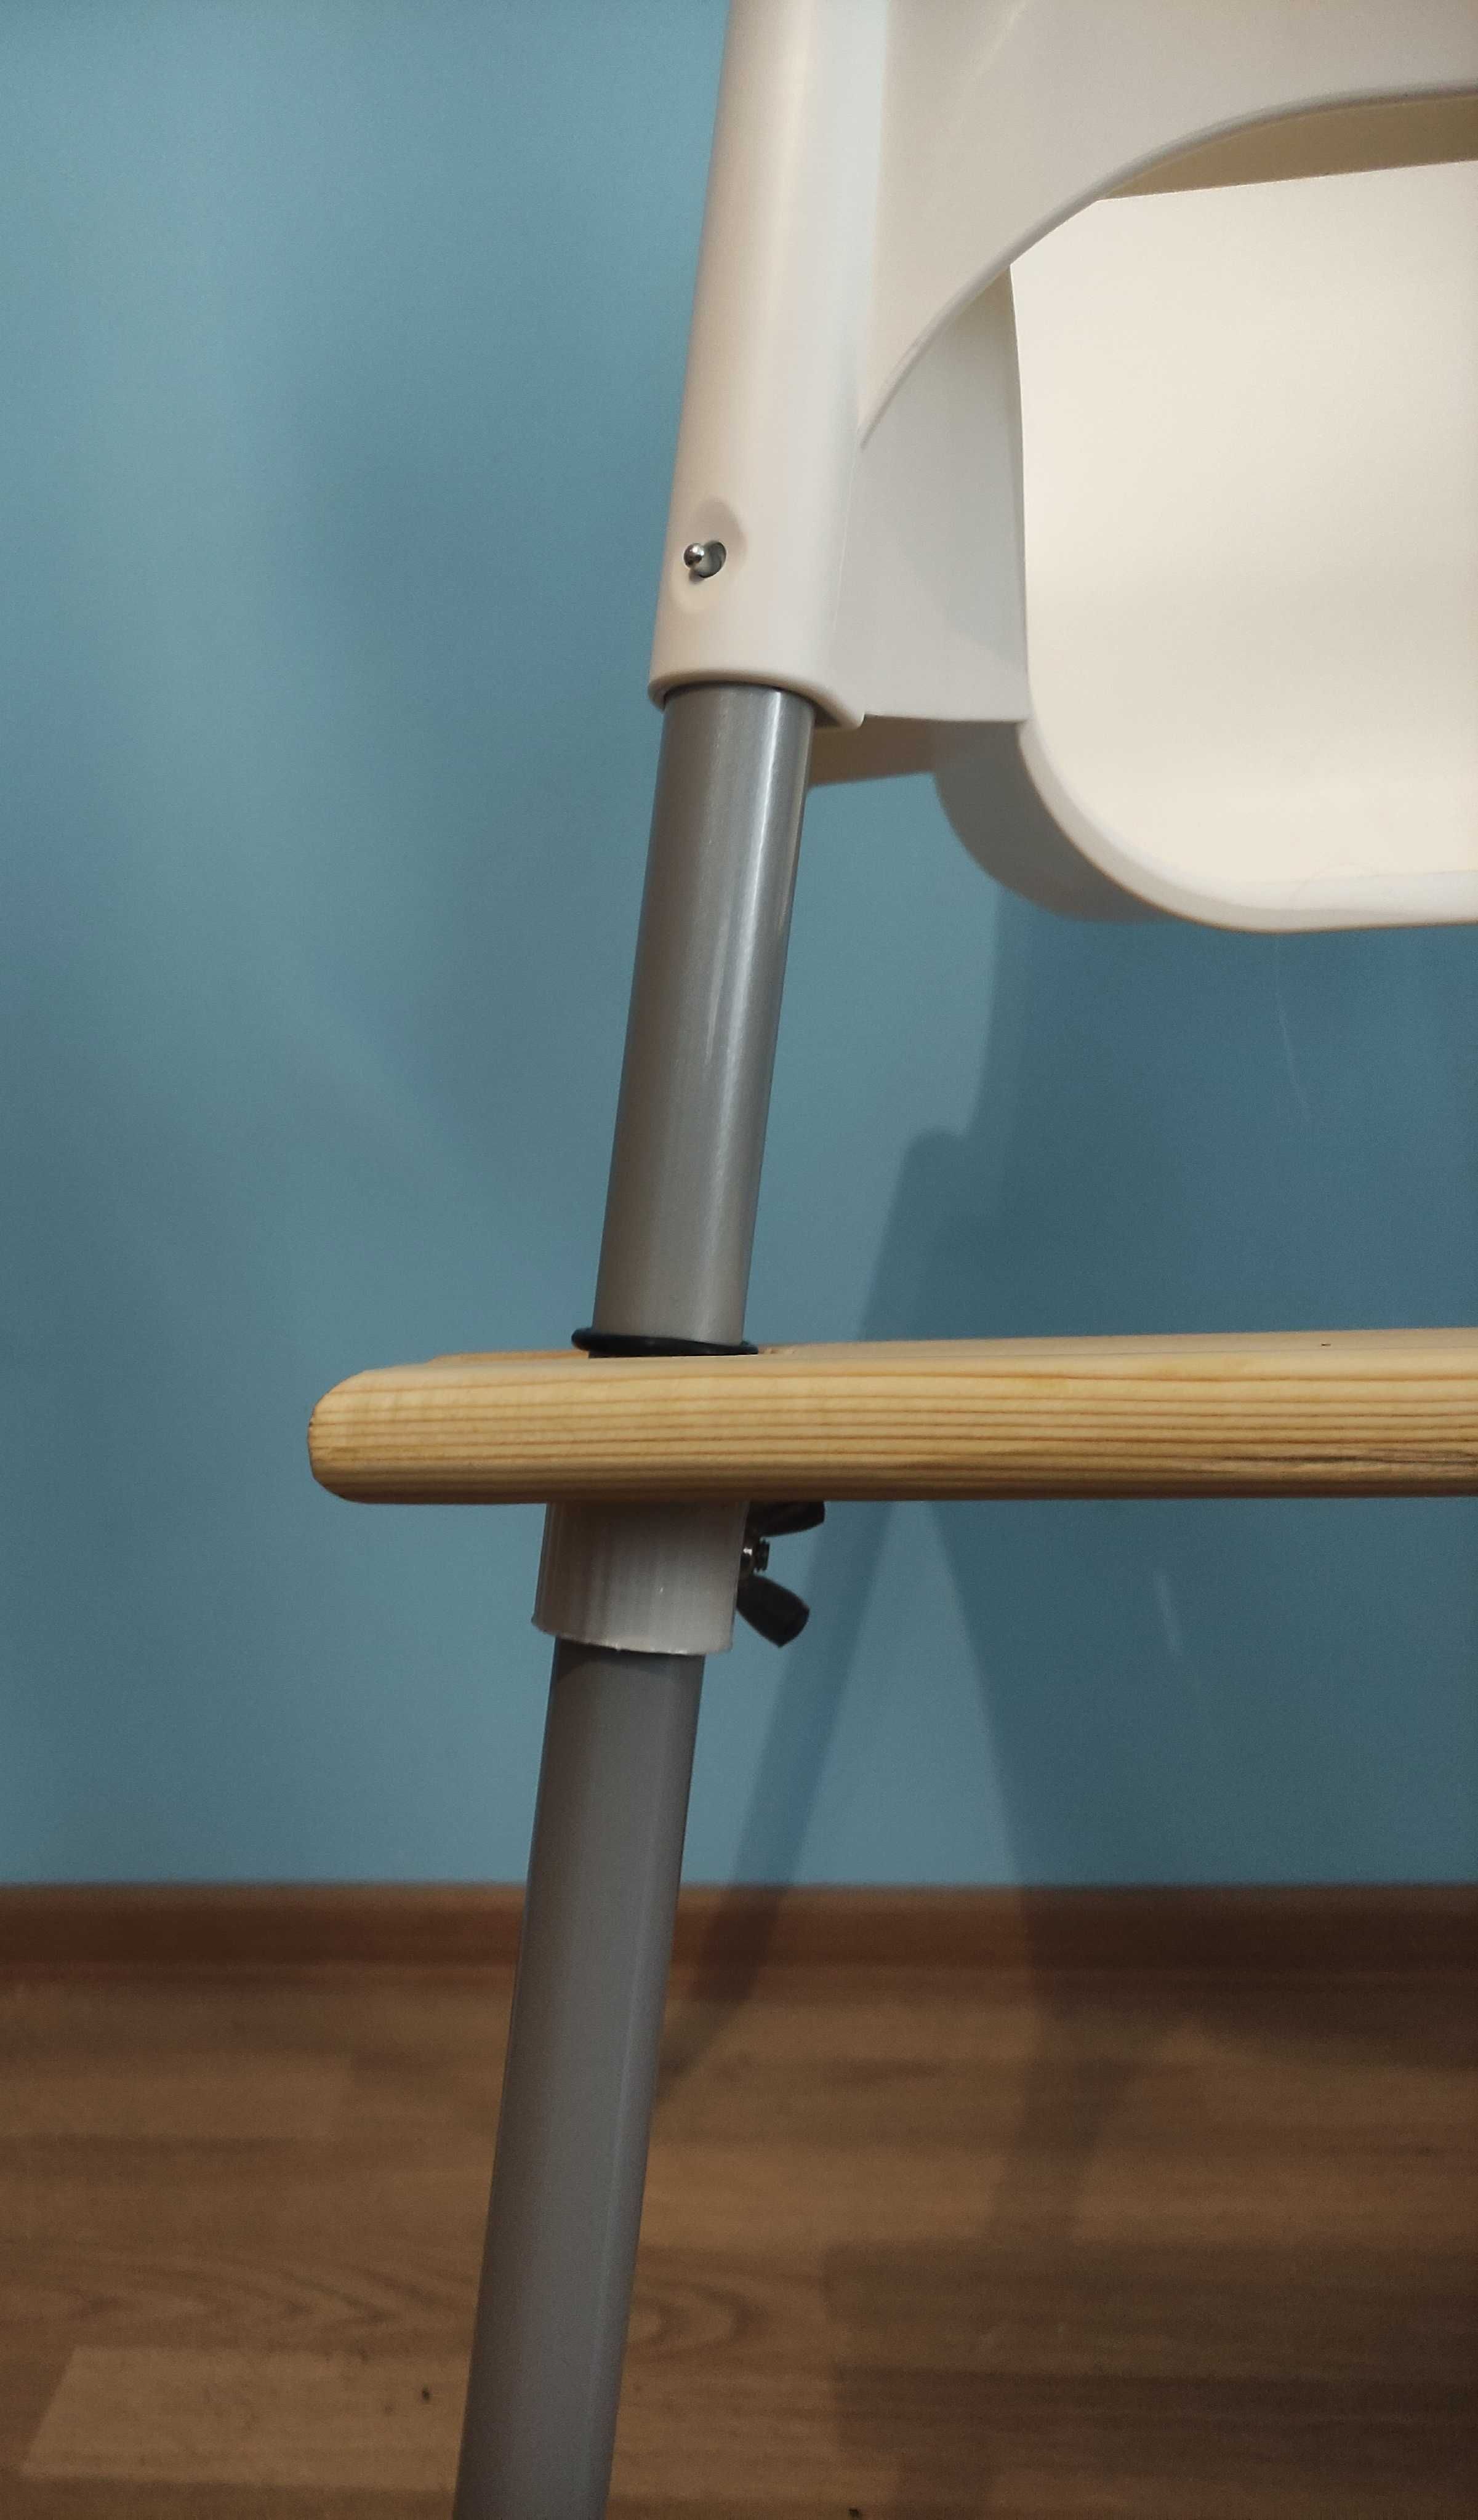 Подножка для стула Икеа антилоп, стульчика для кормления IKEA antilop